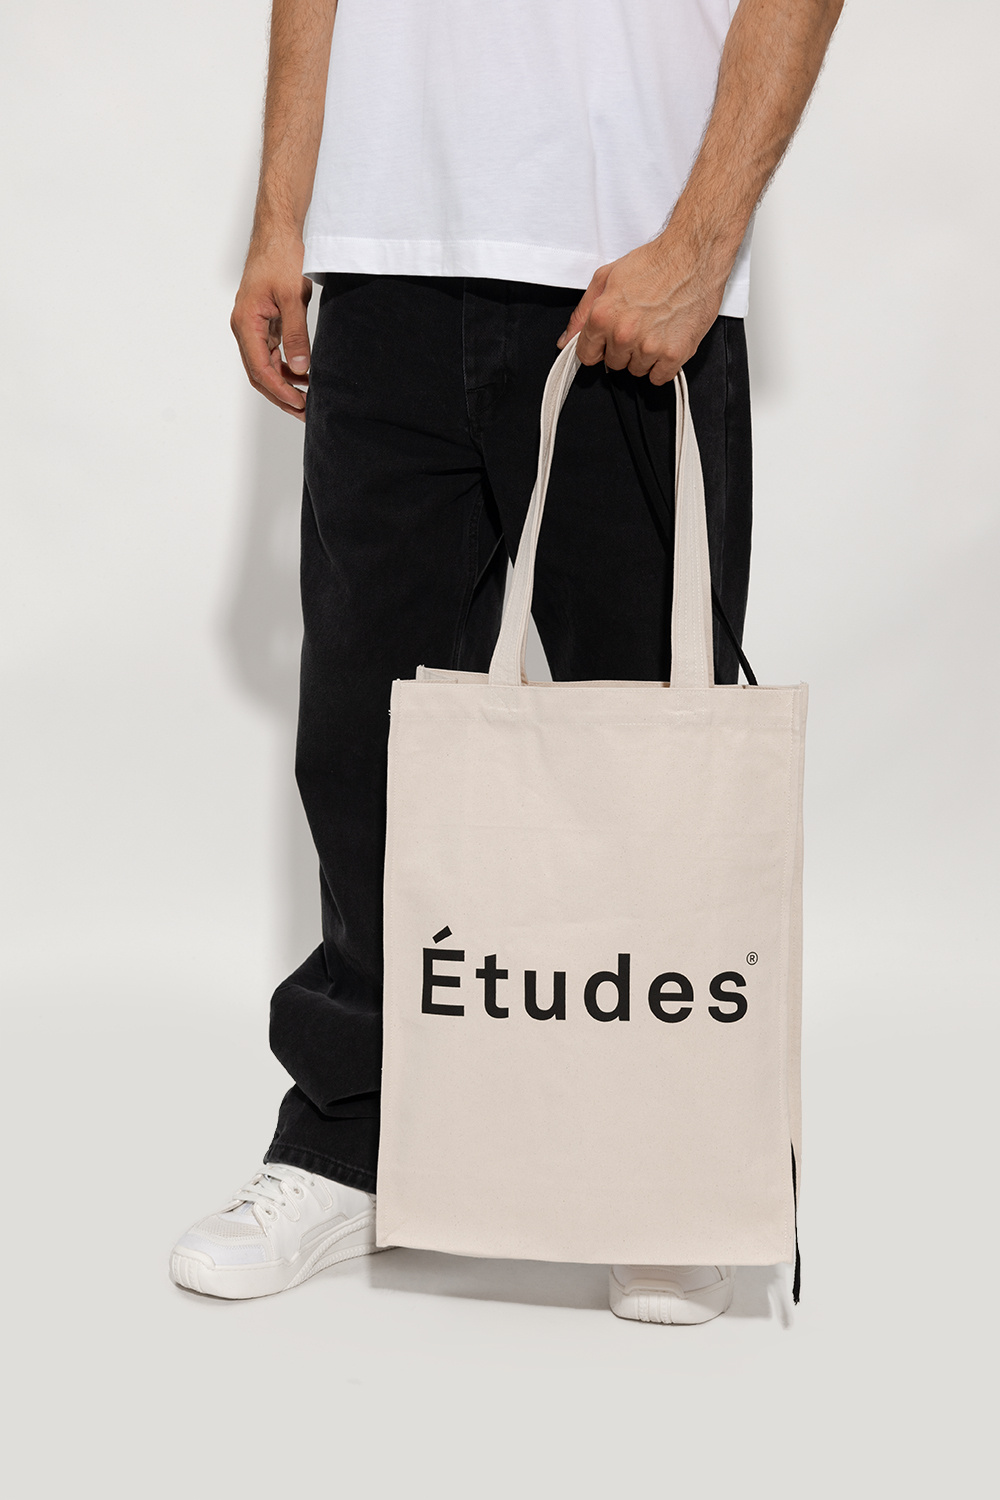 Etudes Shopper estanque bag with logo